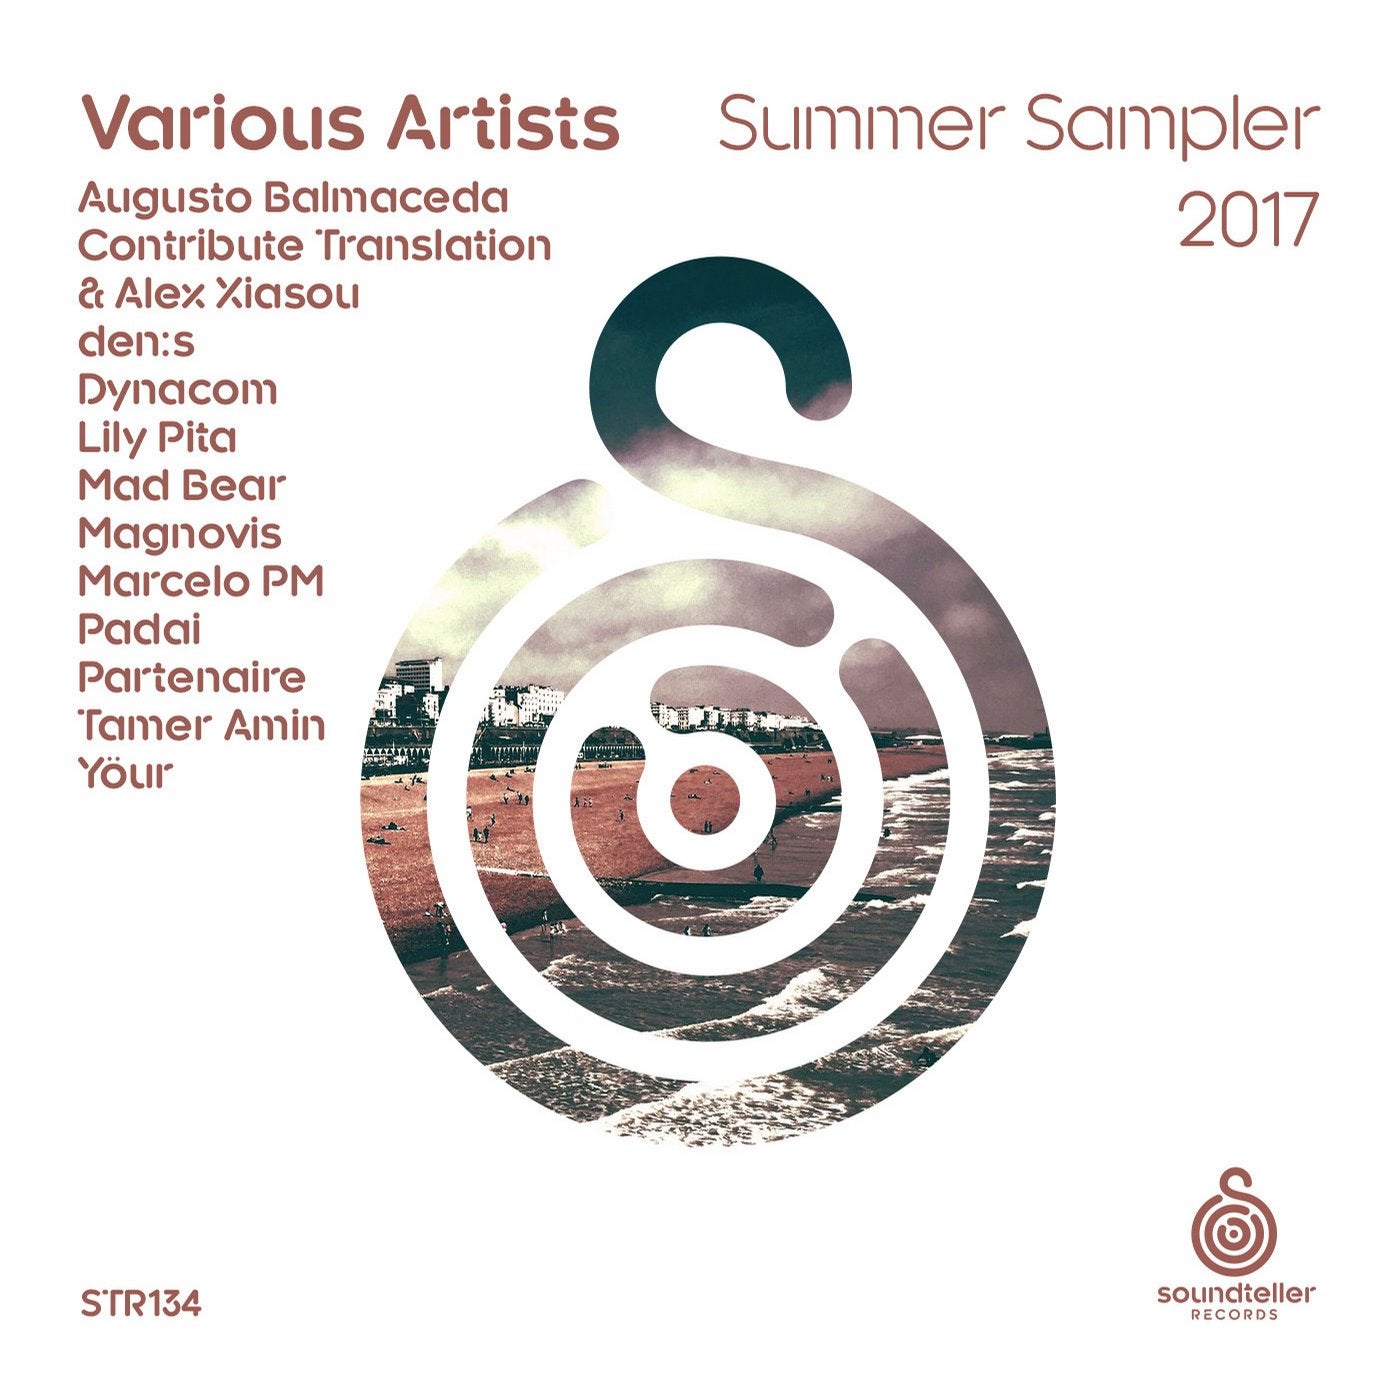 Summer Sampler 2017